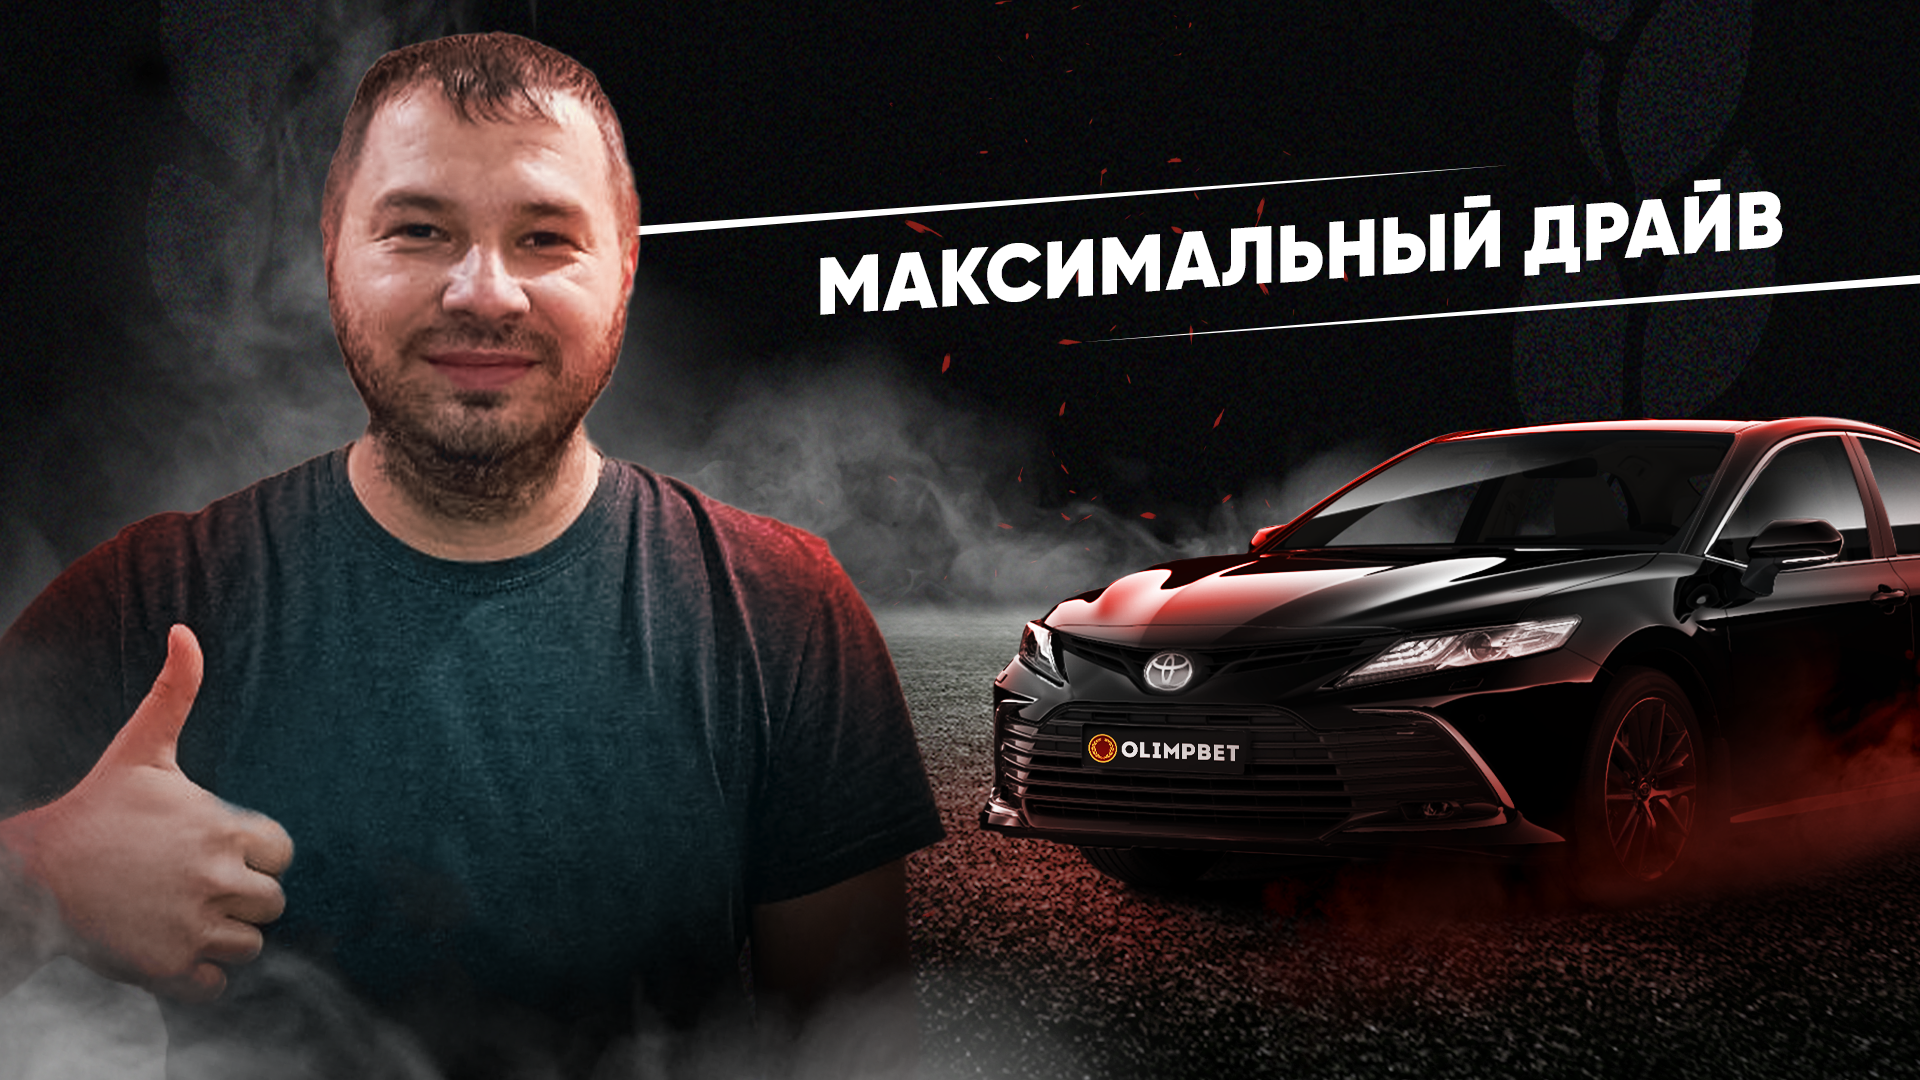 Владимир Богдашин из Семея – победитель второго розыгрыша «Максимального драйва» от Olimpbet